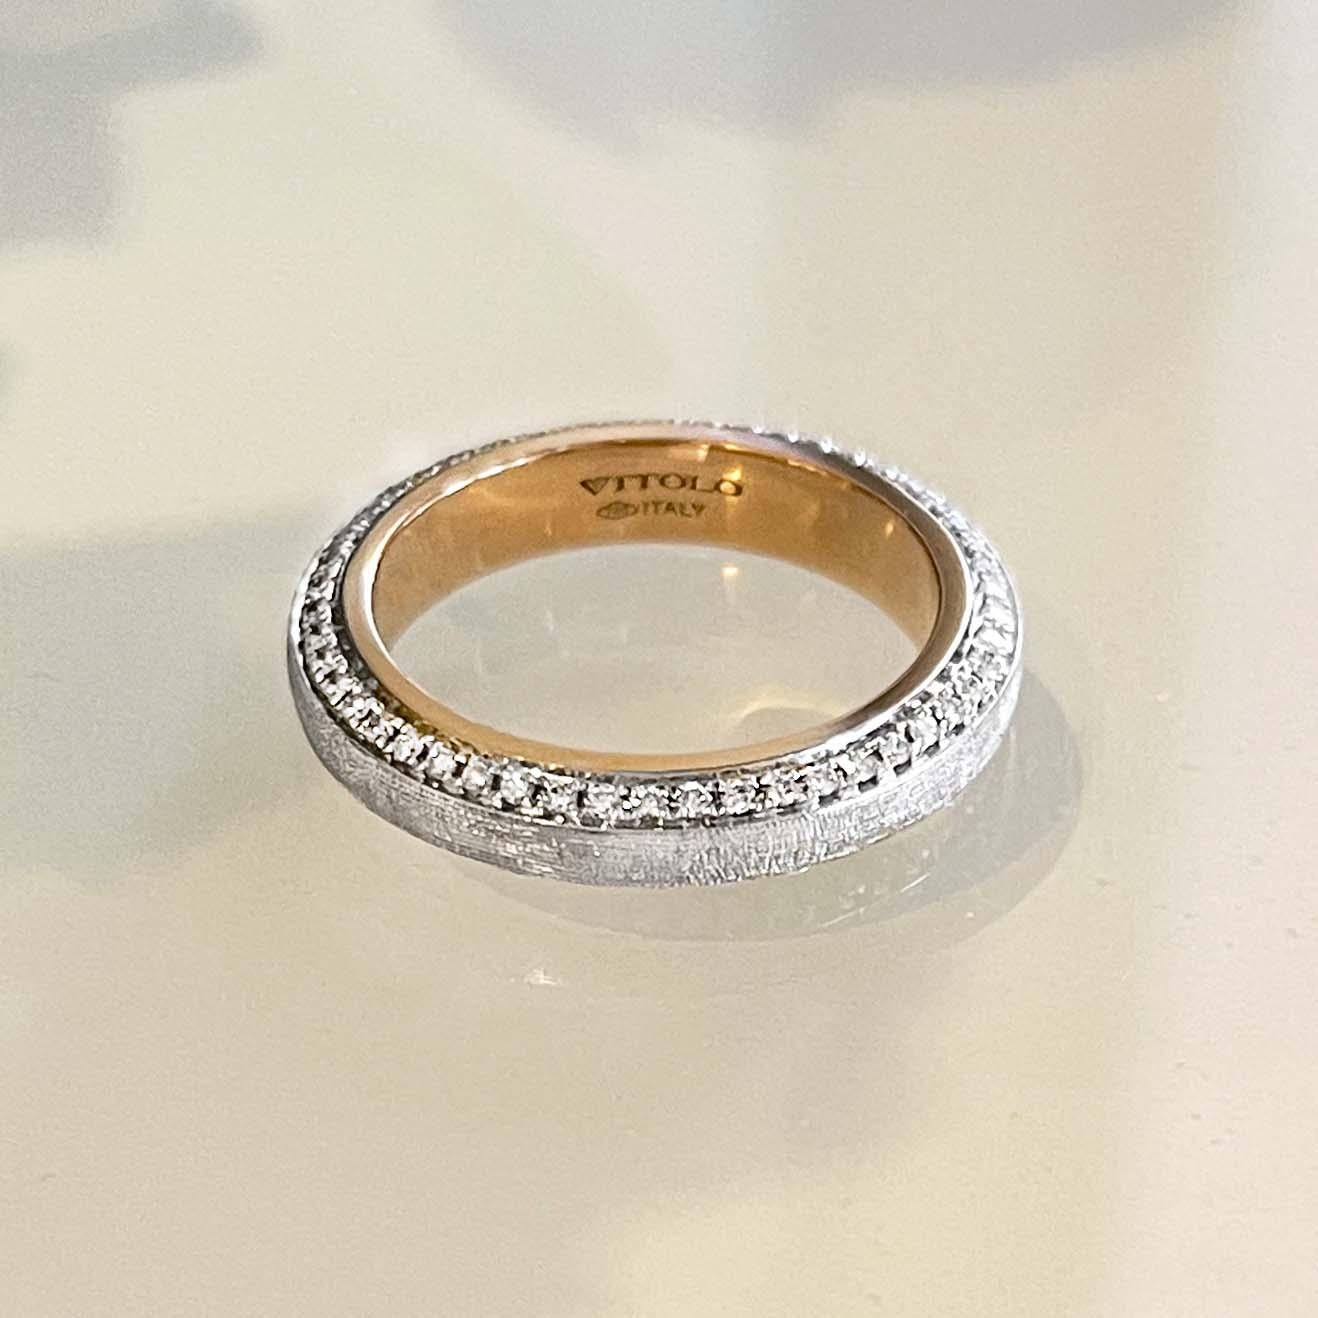 italian wedding ring